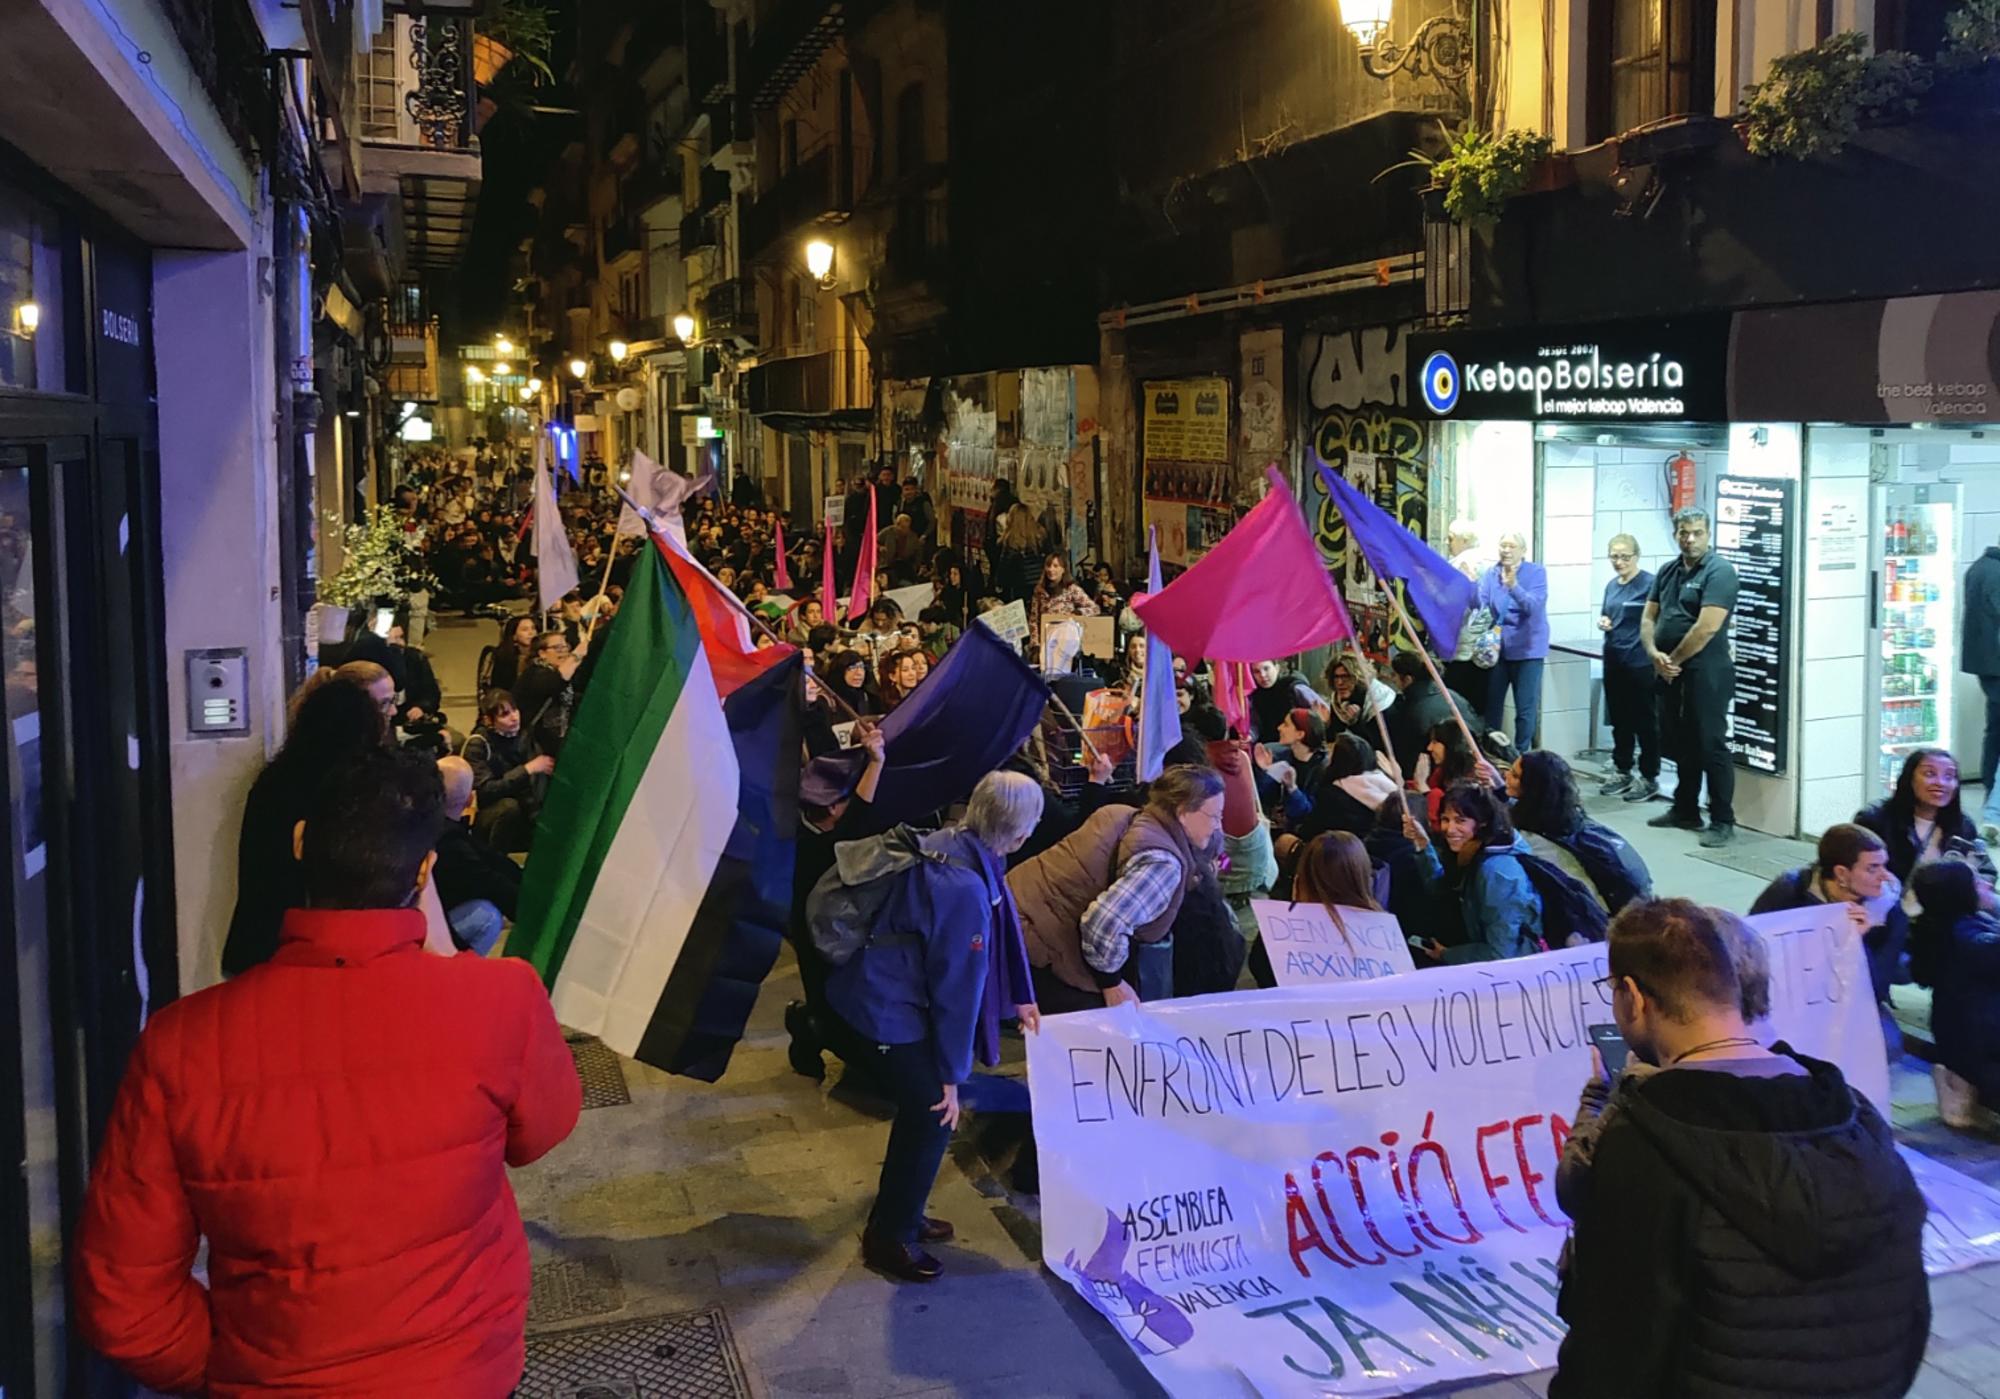 La Assemblea Feminista de València convocó una concentración en la noche del 24 de noviembre que recorrió el centro de la ciduad. - 3